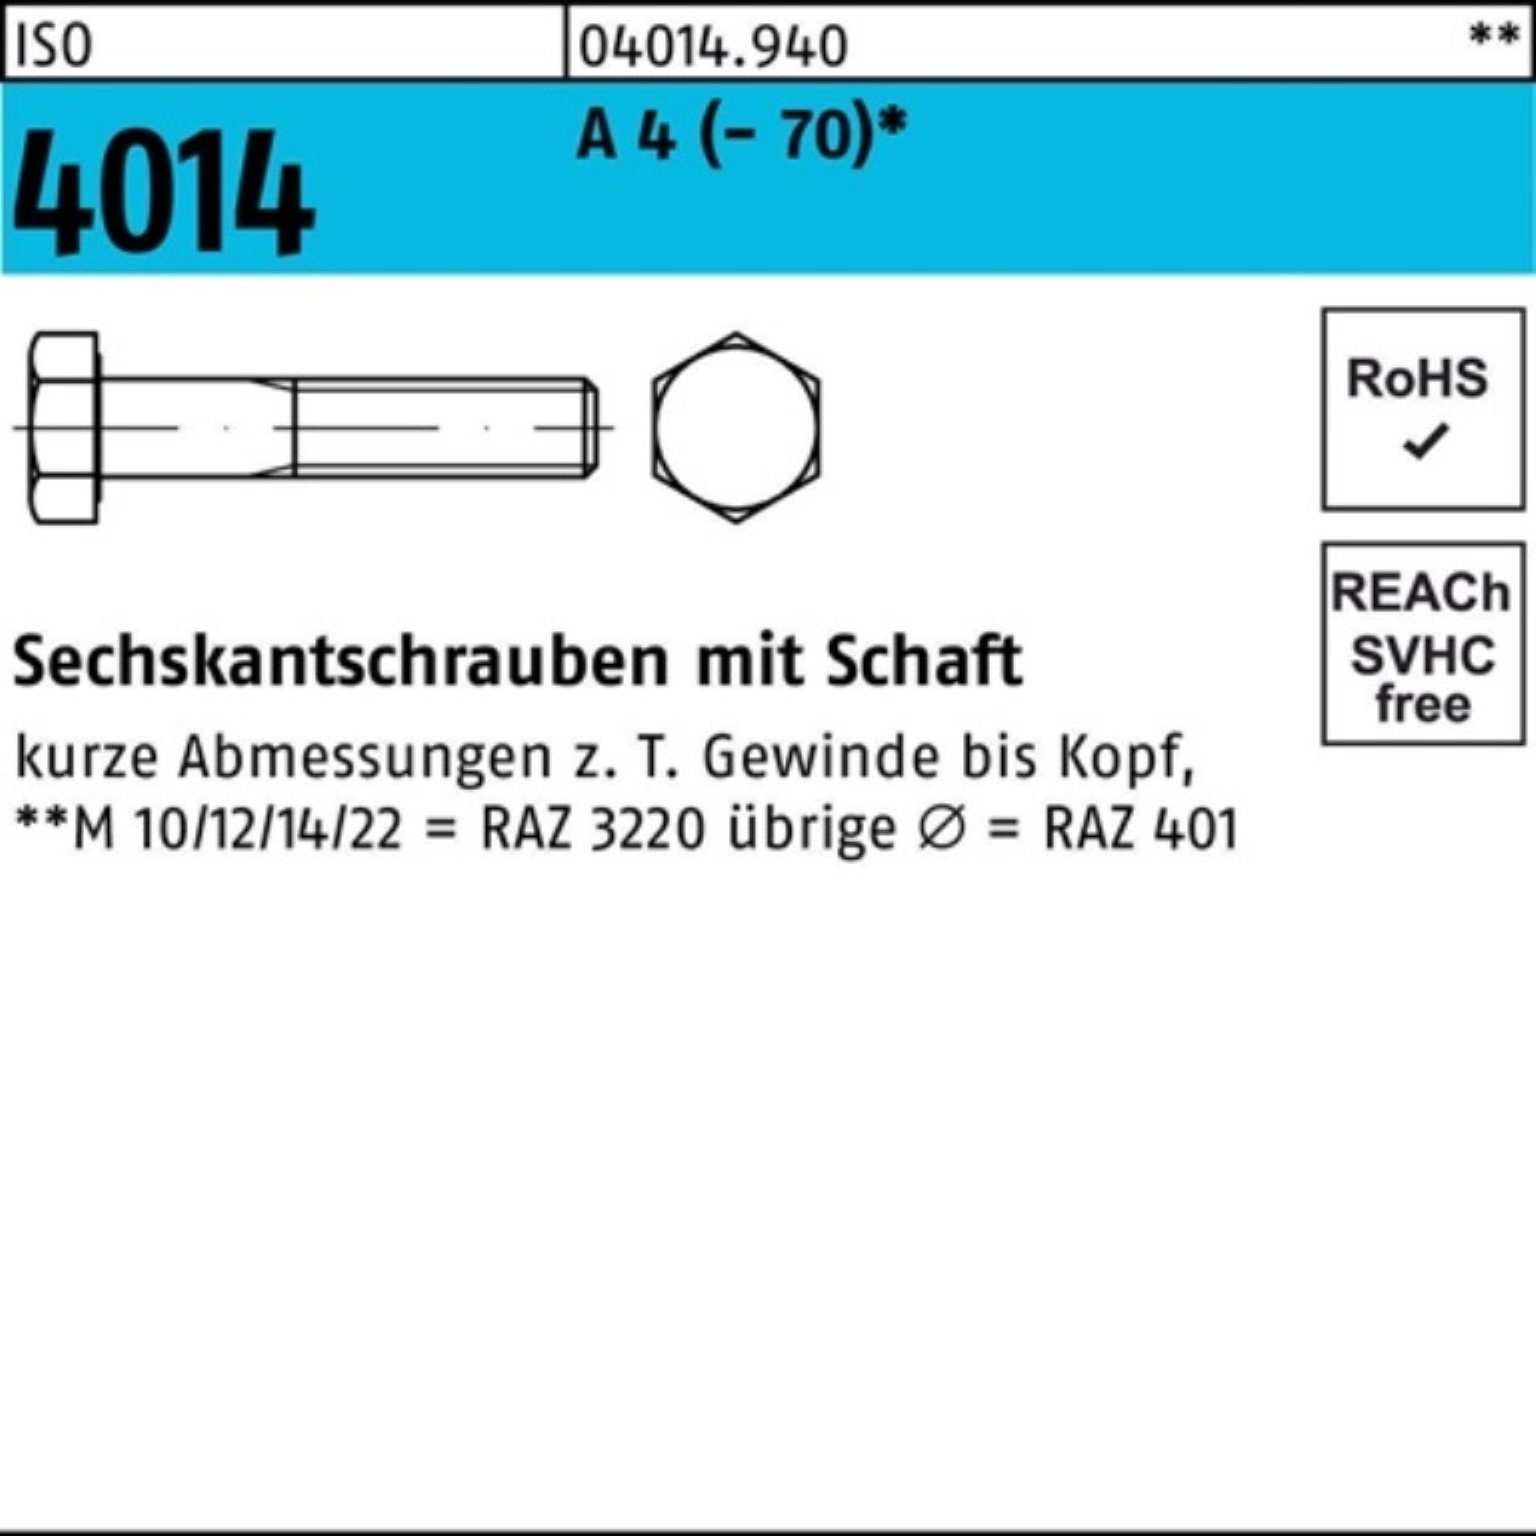 Sechskantschraube 1 Sechskantschraube Bufab St (70) Pack ISO 100er 4 Schaft M20x 4014 210 A